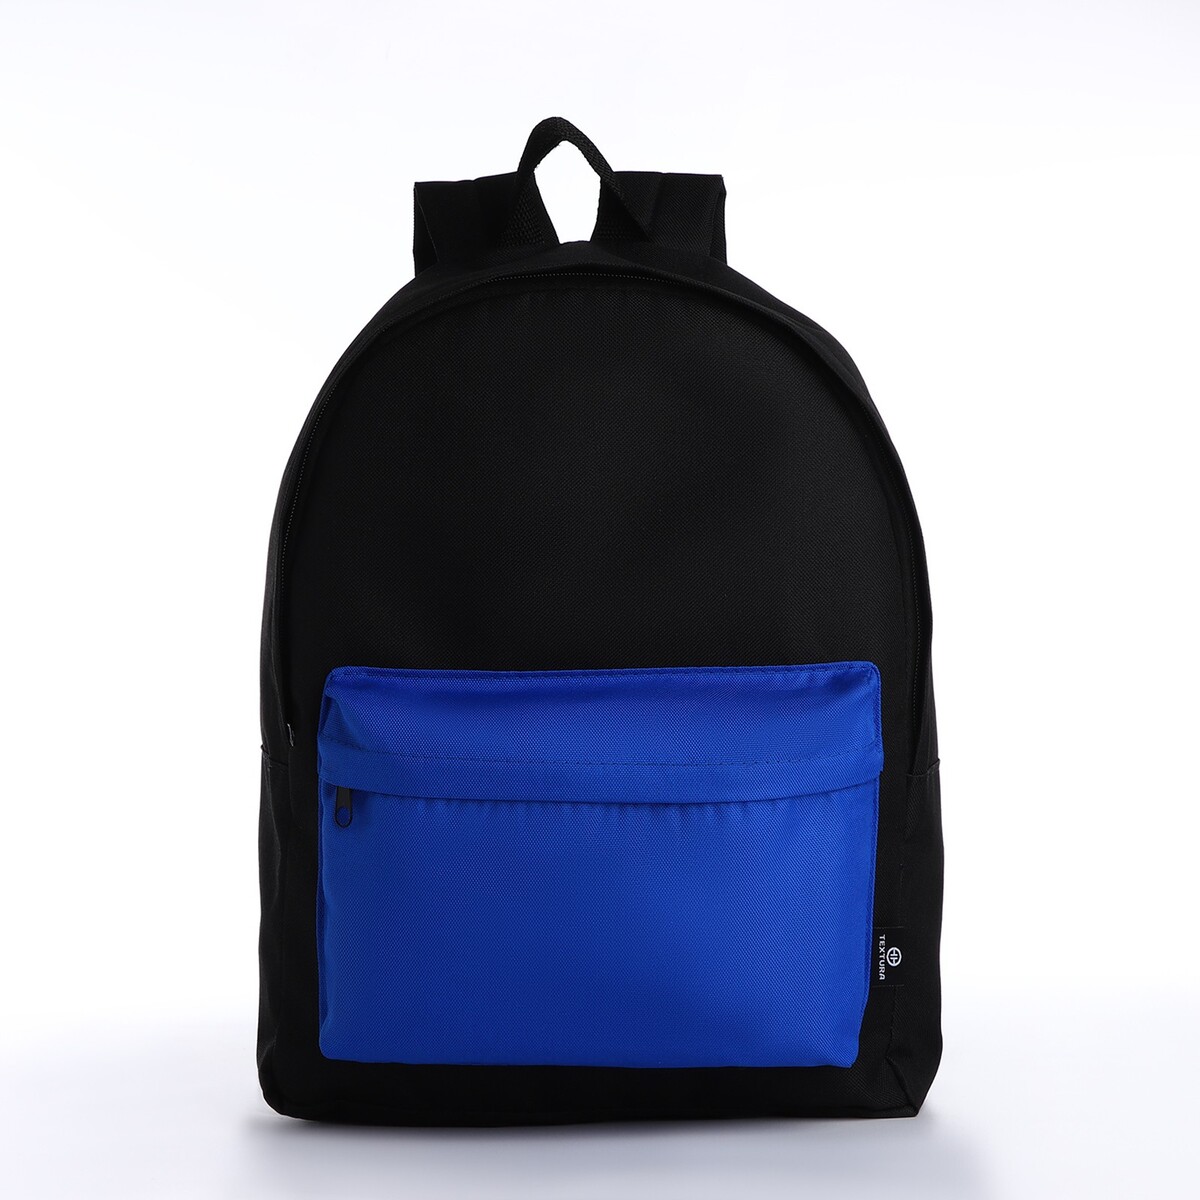 Спортивный рюкзак textura, 20 литров, цвет черный/синий рюкзак rockbros 20 литров rb h9 bk